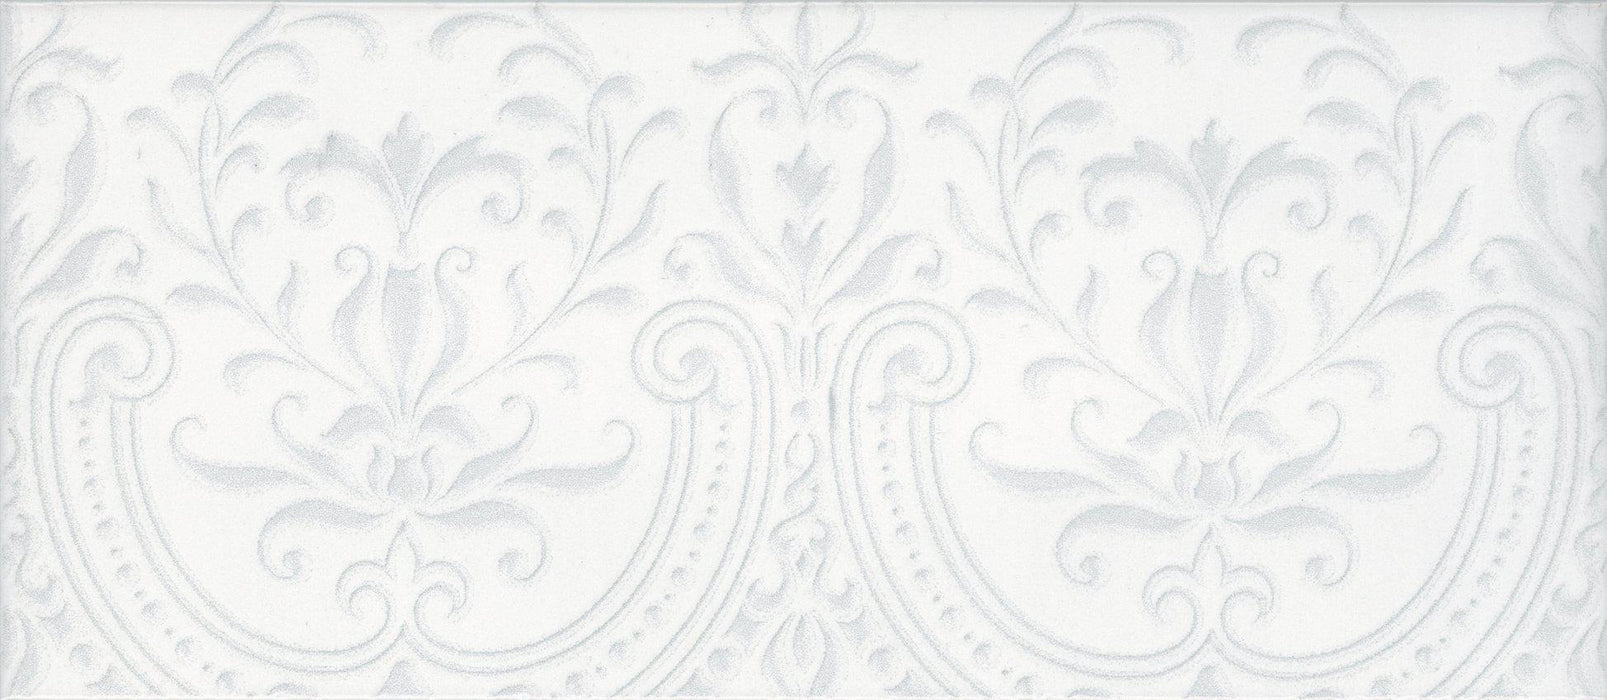 Maiolica Chantilly Alencon White Glossy 4x10 Ceramic  Tile